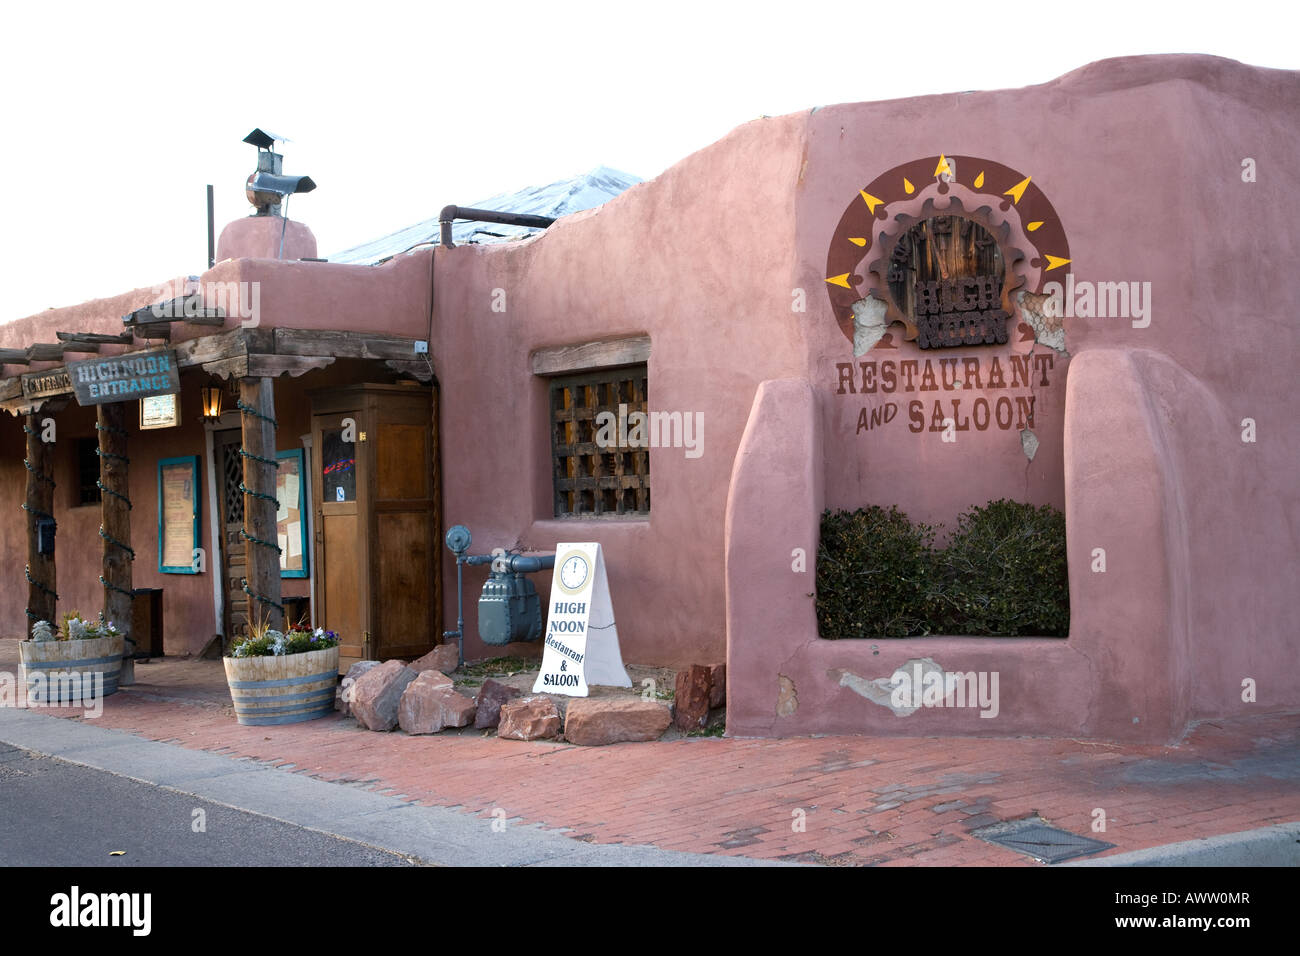 Red Adobe Mauern von High Noon Restaurant Albuquerque ew Mexiko Stockfoto